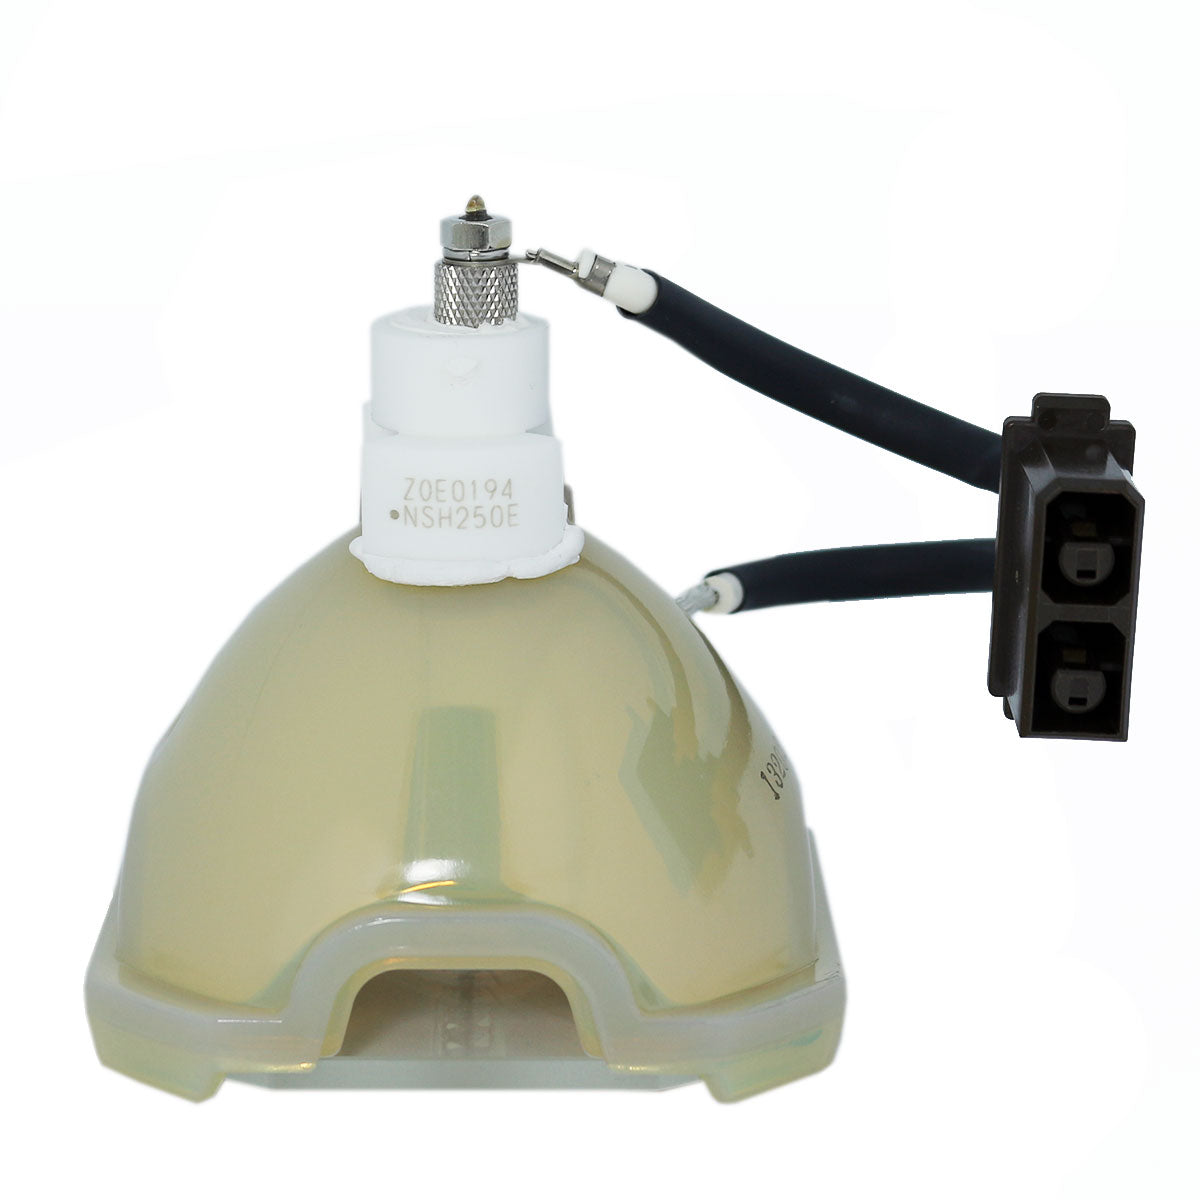 Runco RUPA-004900 Ushio Projector Bare Lamp